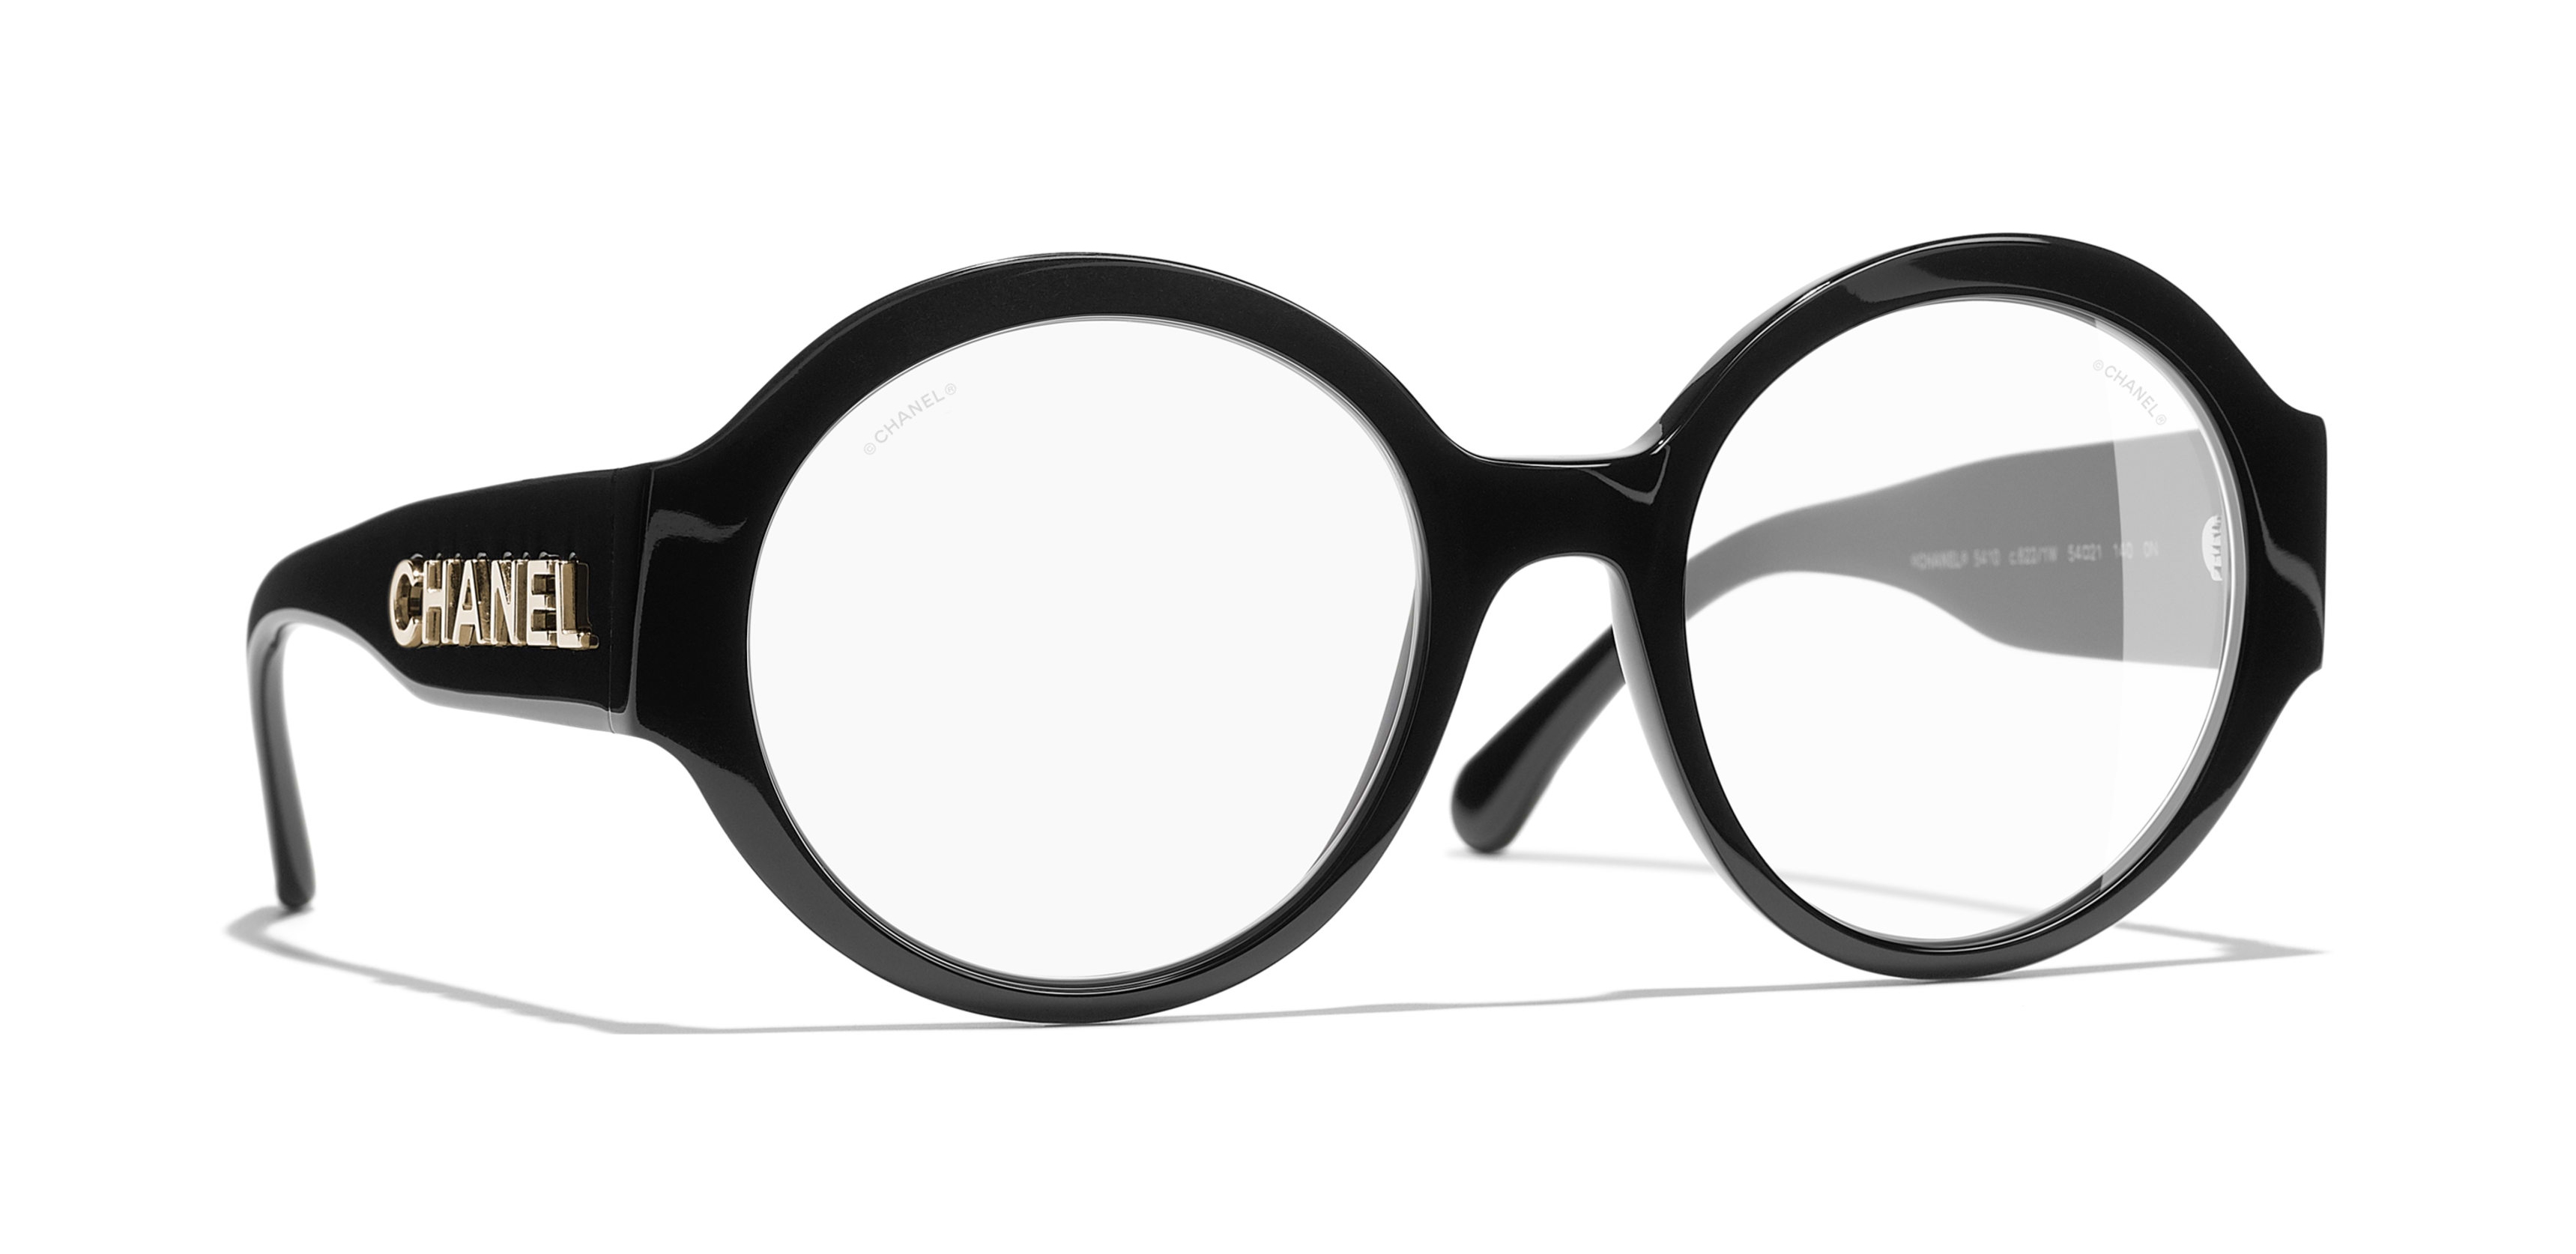 Our Designer Eyewear Brands  Prescription Glasses at St Johns Wood